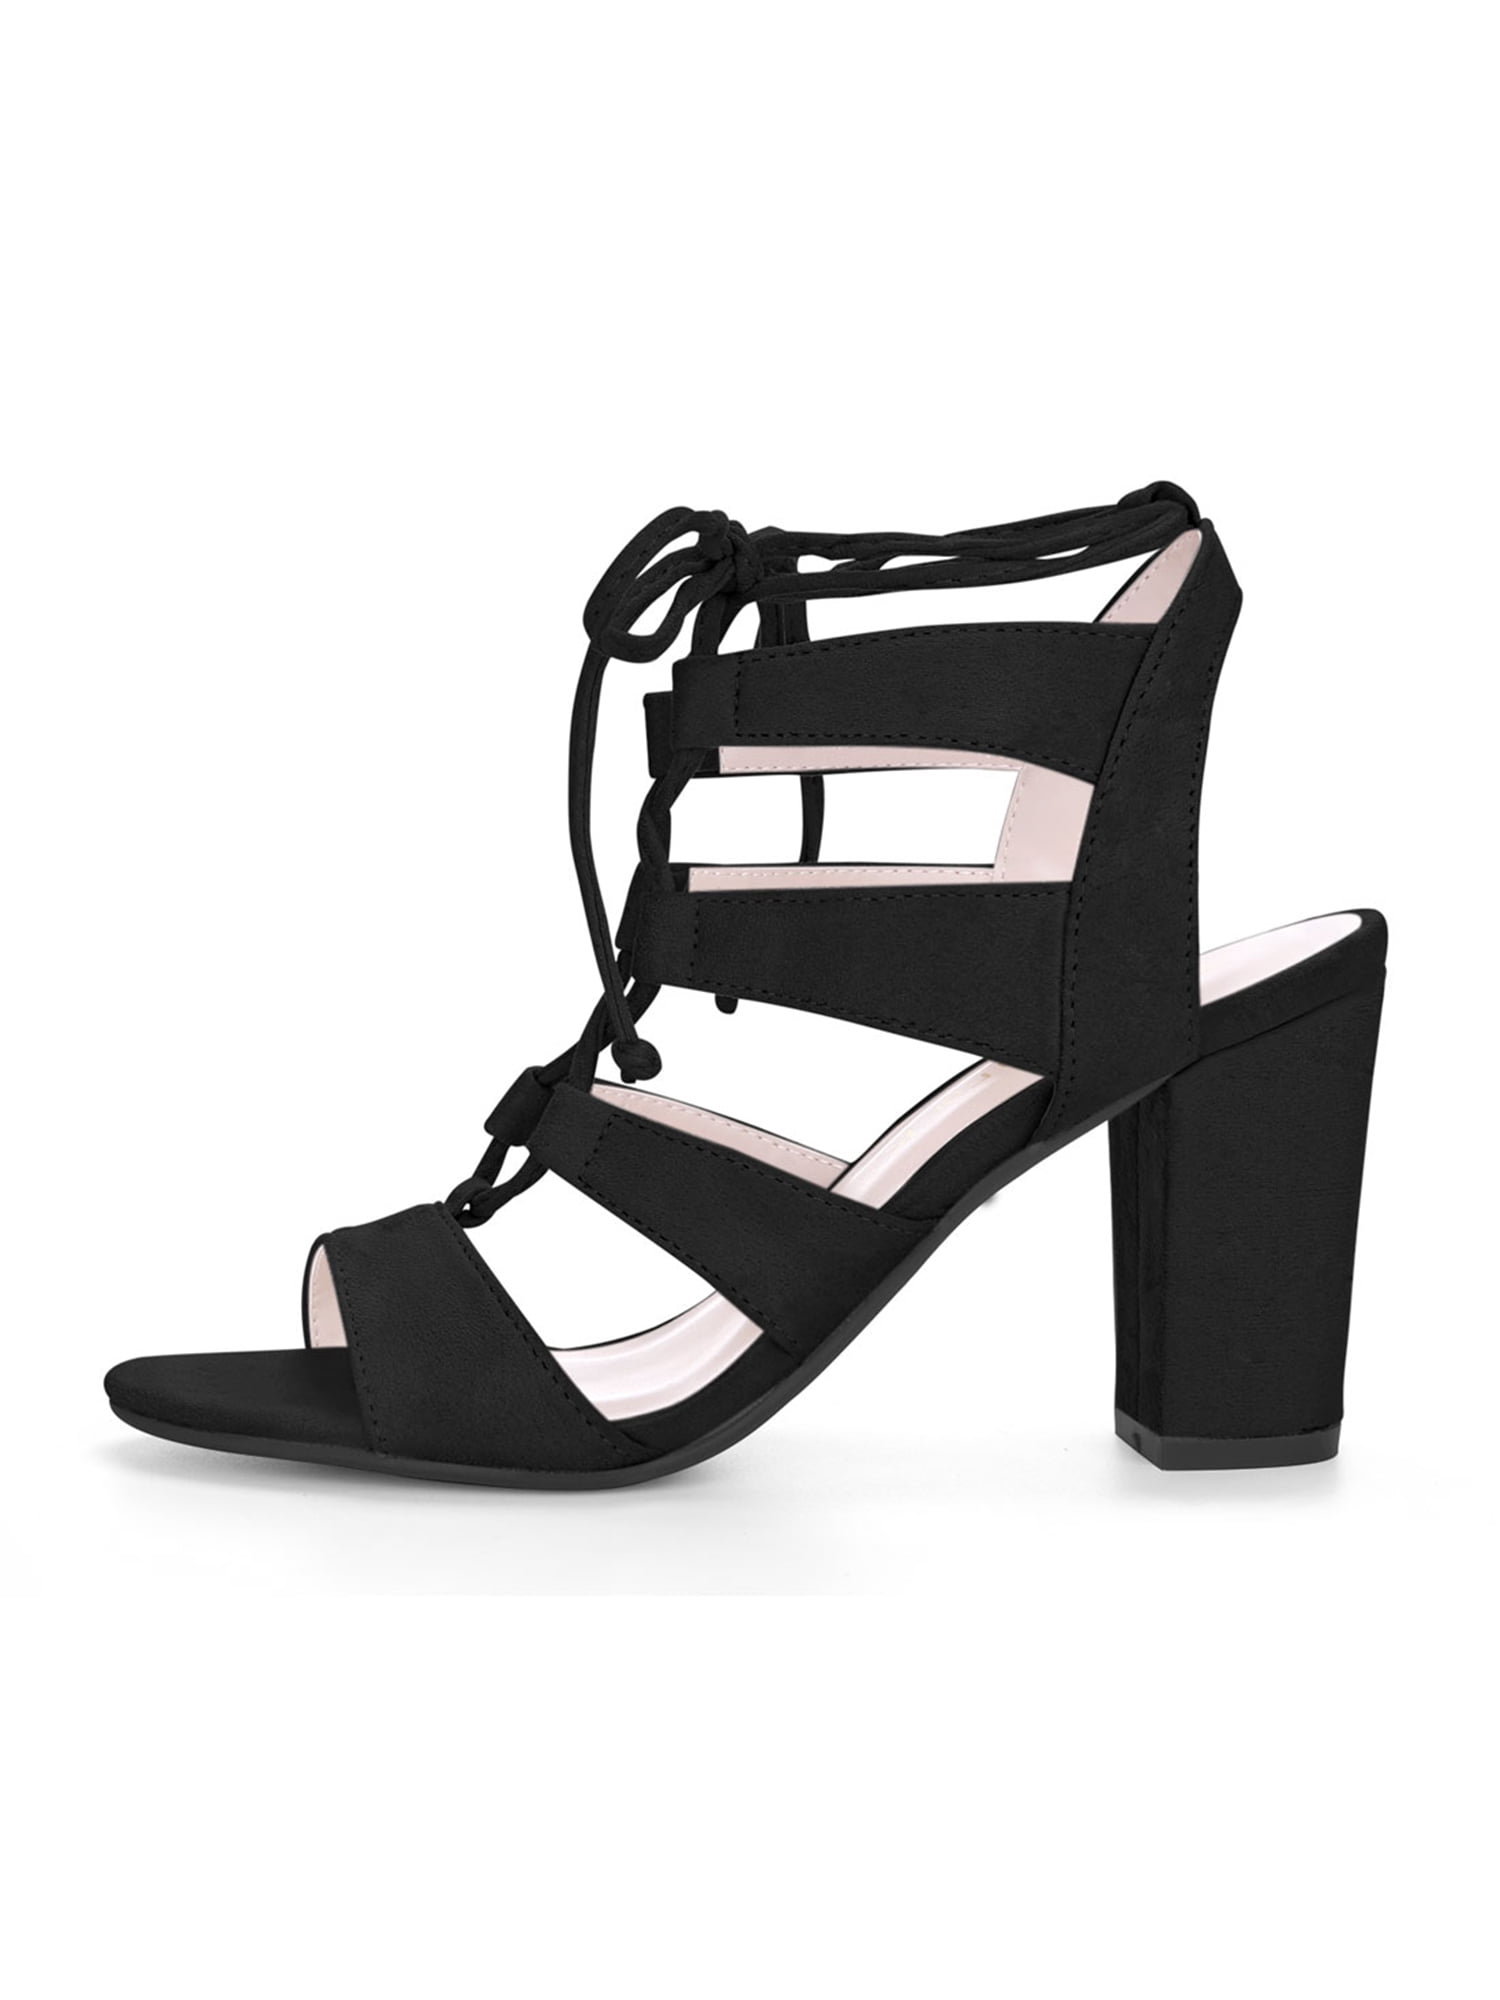 black block heels tie up